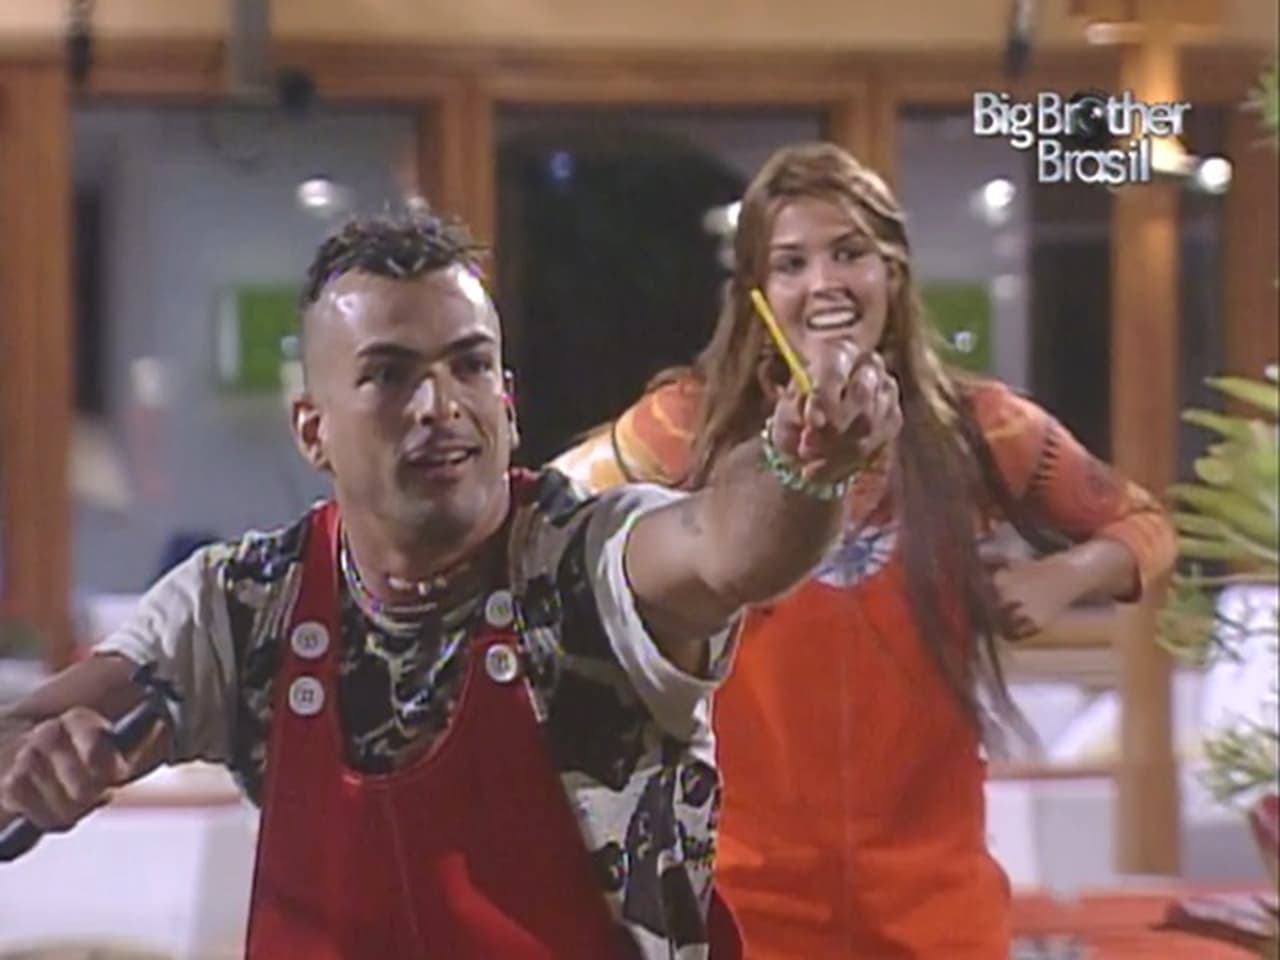 Big Brother Brasil - Season 4 Episode 31 : Episode 31